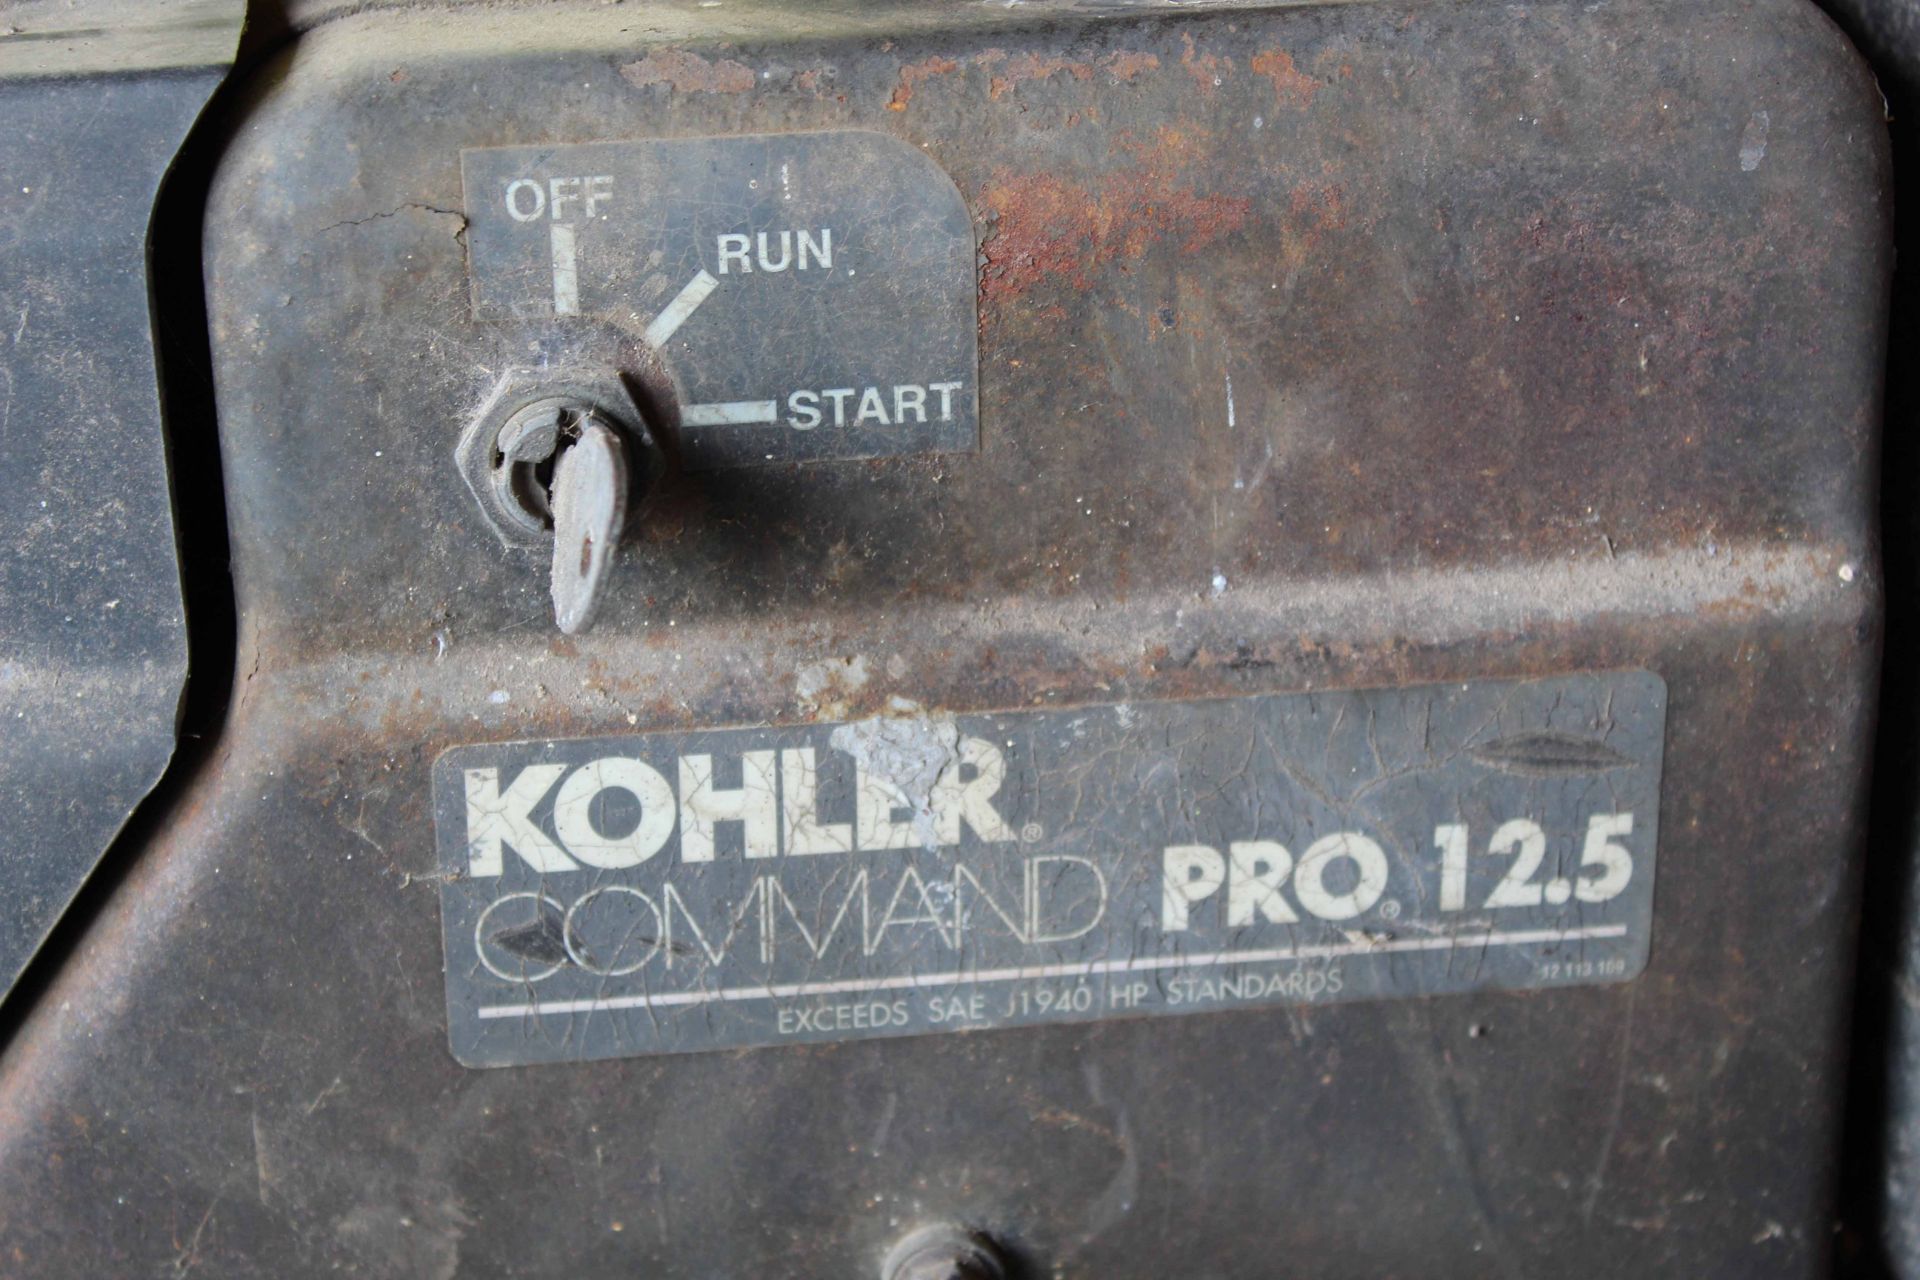 PORTABLE AIR COMPRESSOR, 2-stage, pwrd. by Kohler 12-1/2 HP gasoline engine, elec. start - Image 3 of 3